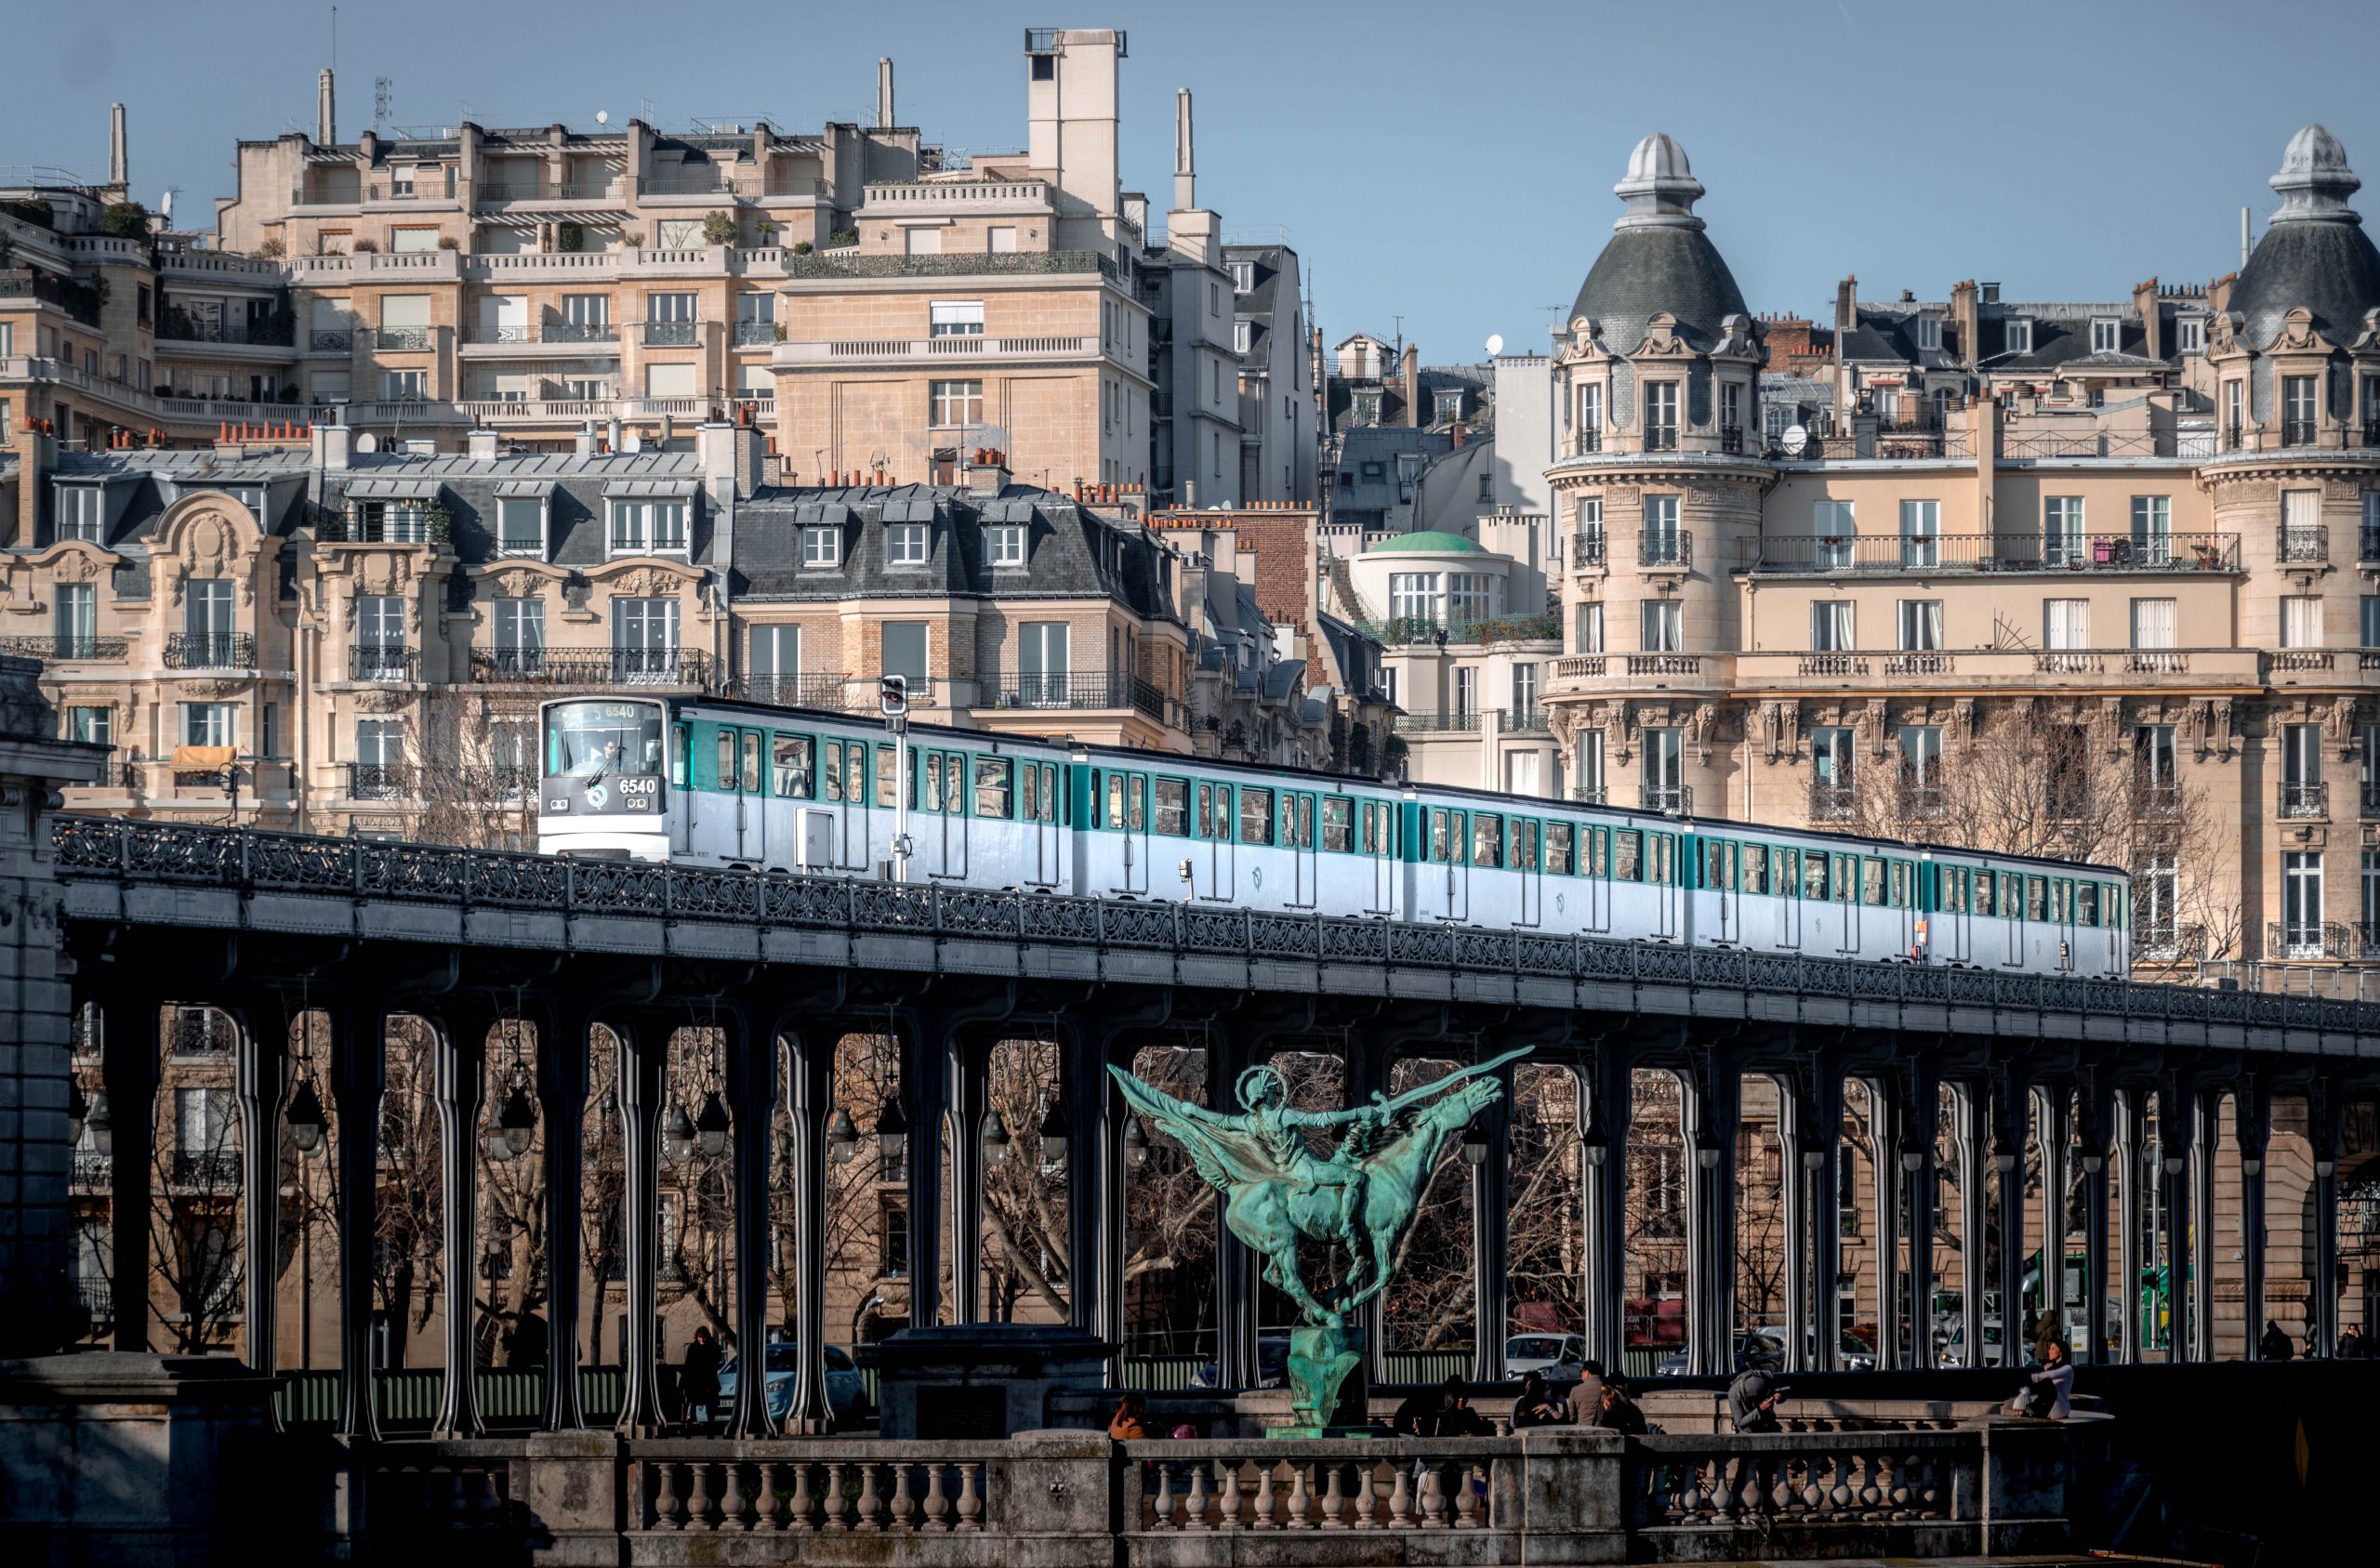 Grand paris express : 5 communes près des gares pour acheter un bien